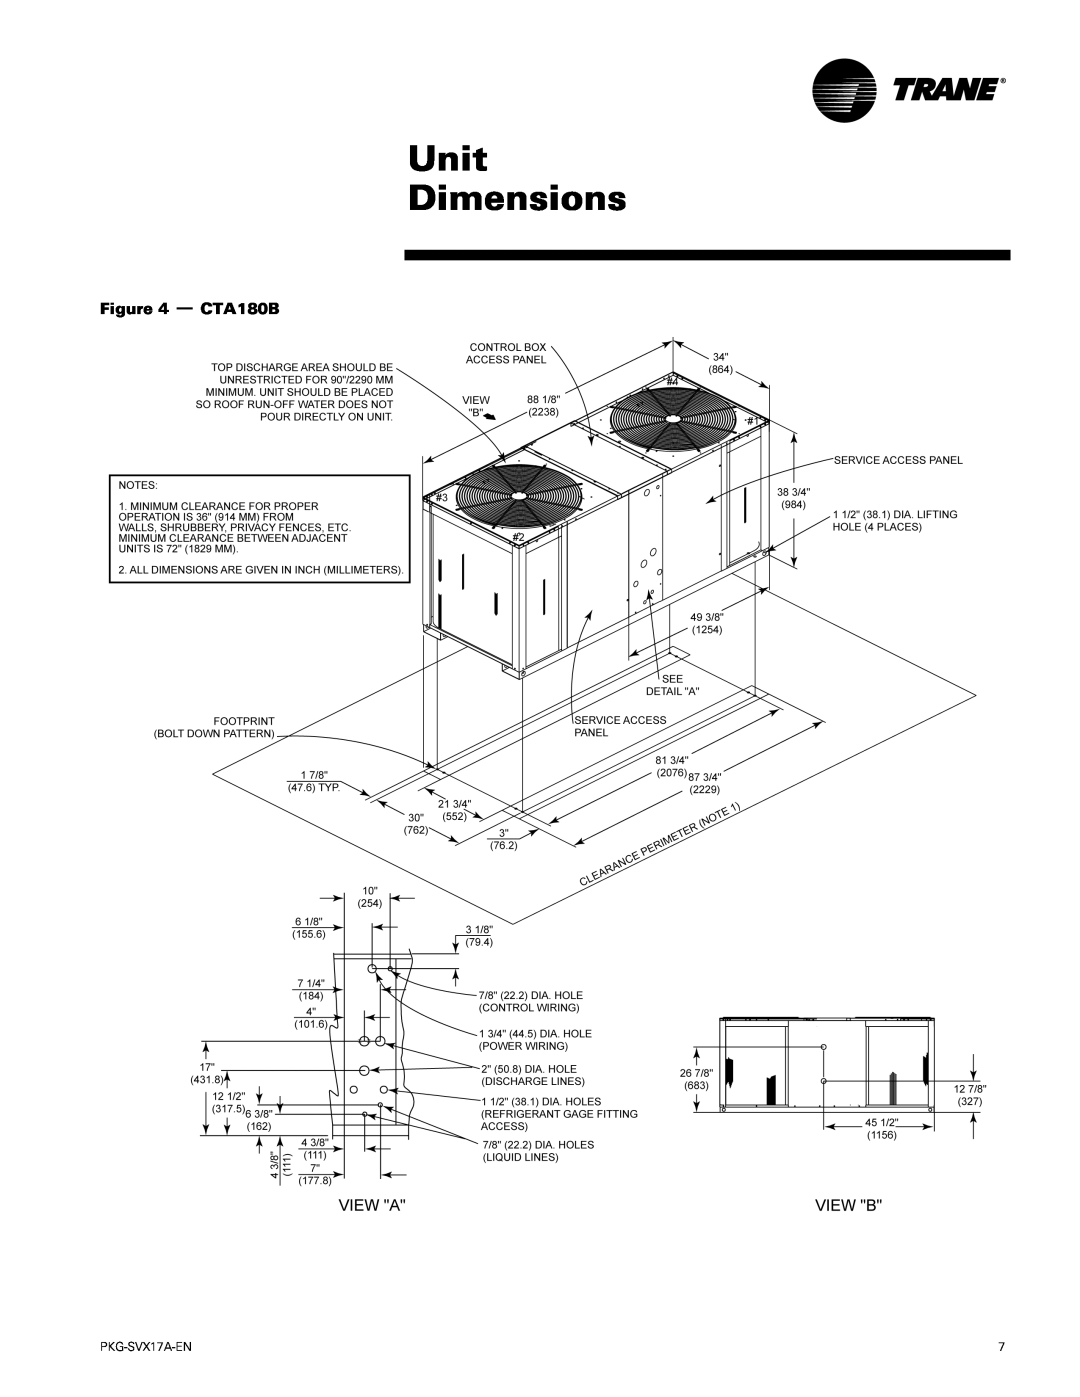 Trane PKG-SVX17A-EN manual Unit Dimensions, CTA180B 